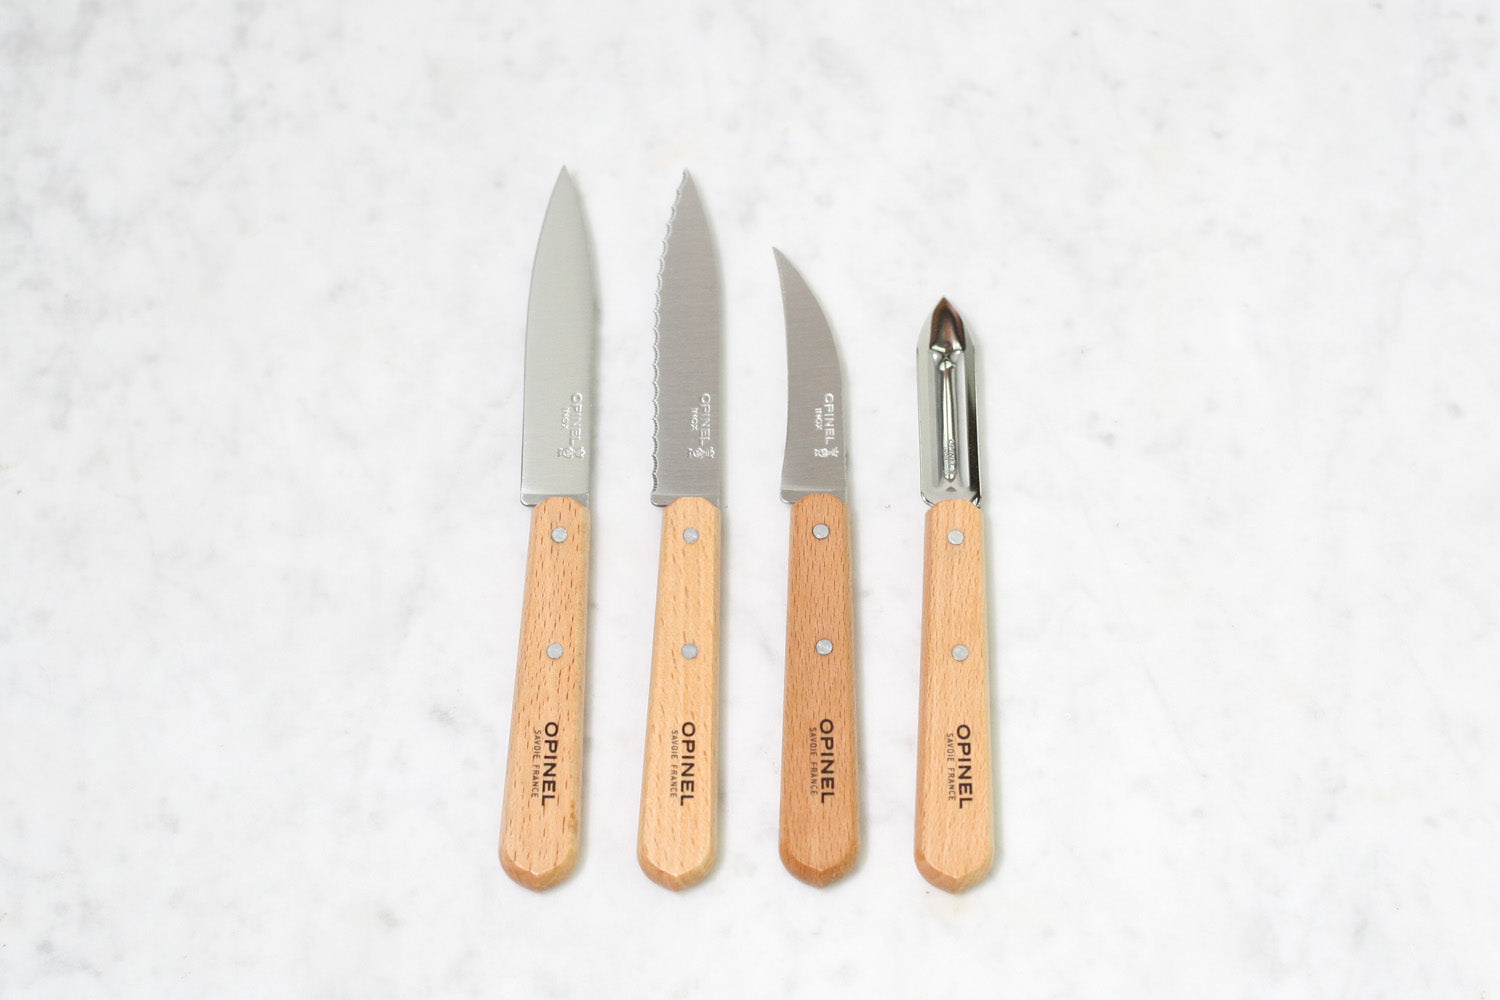 Opinel "Les Essentiels" Kitchen Knife Set